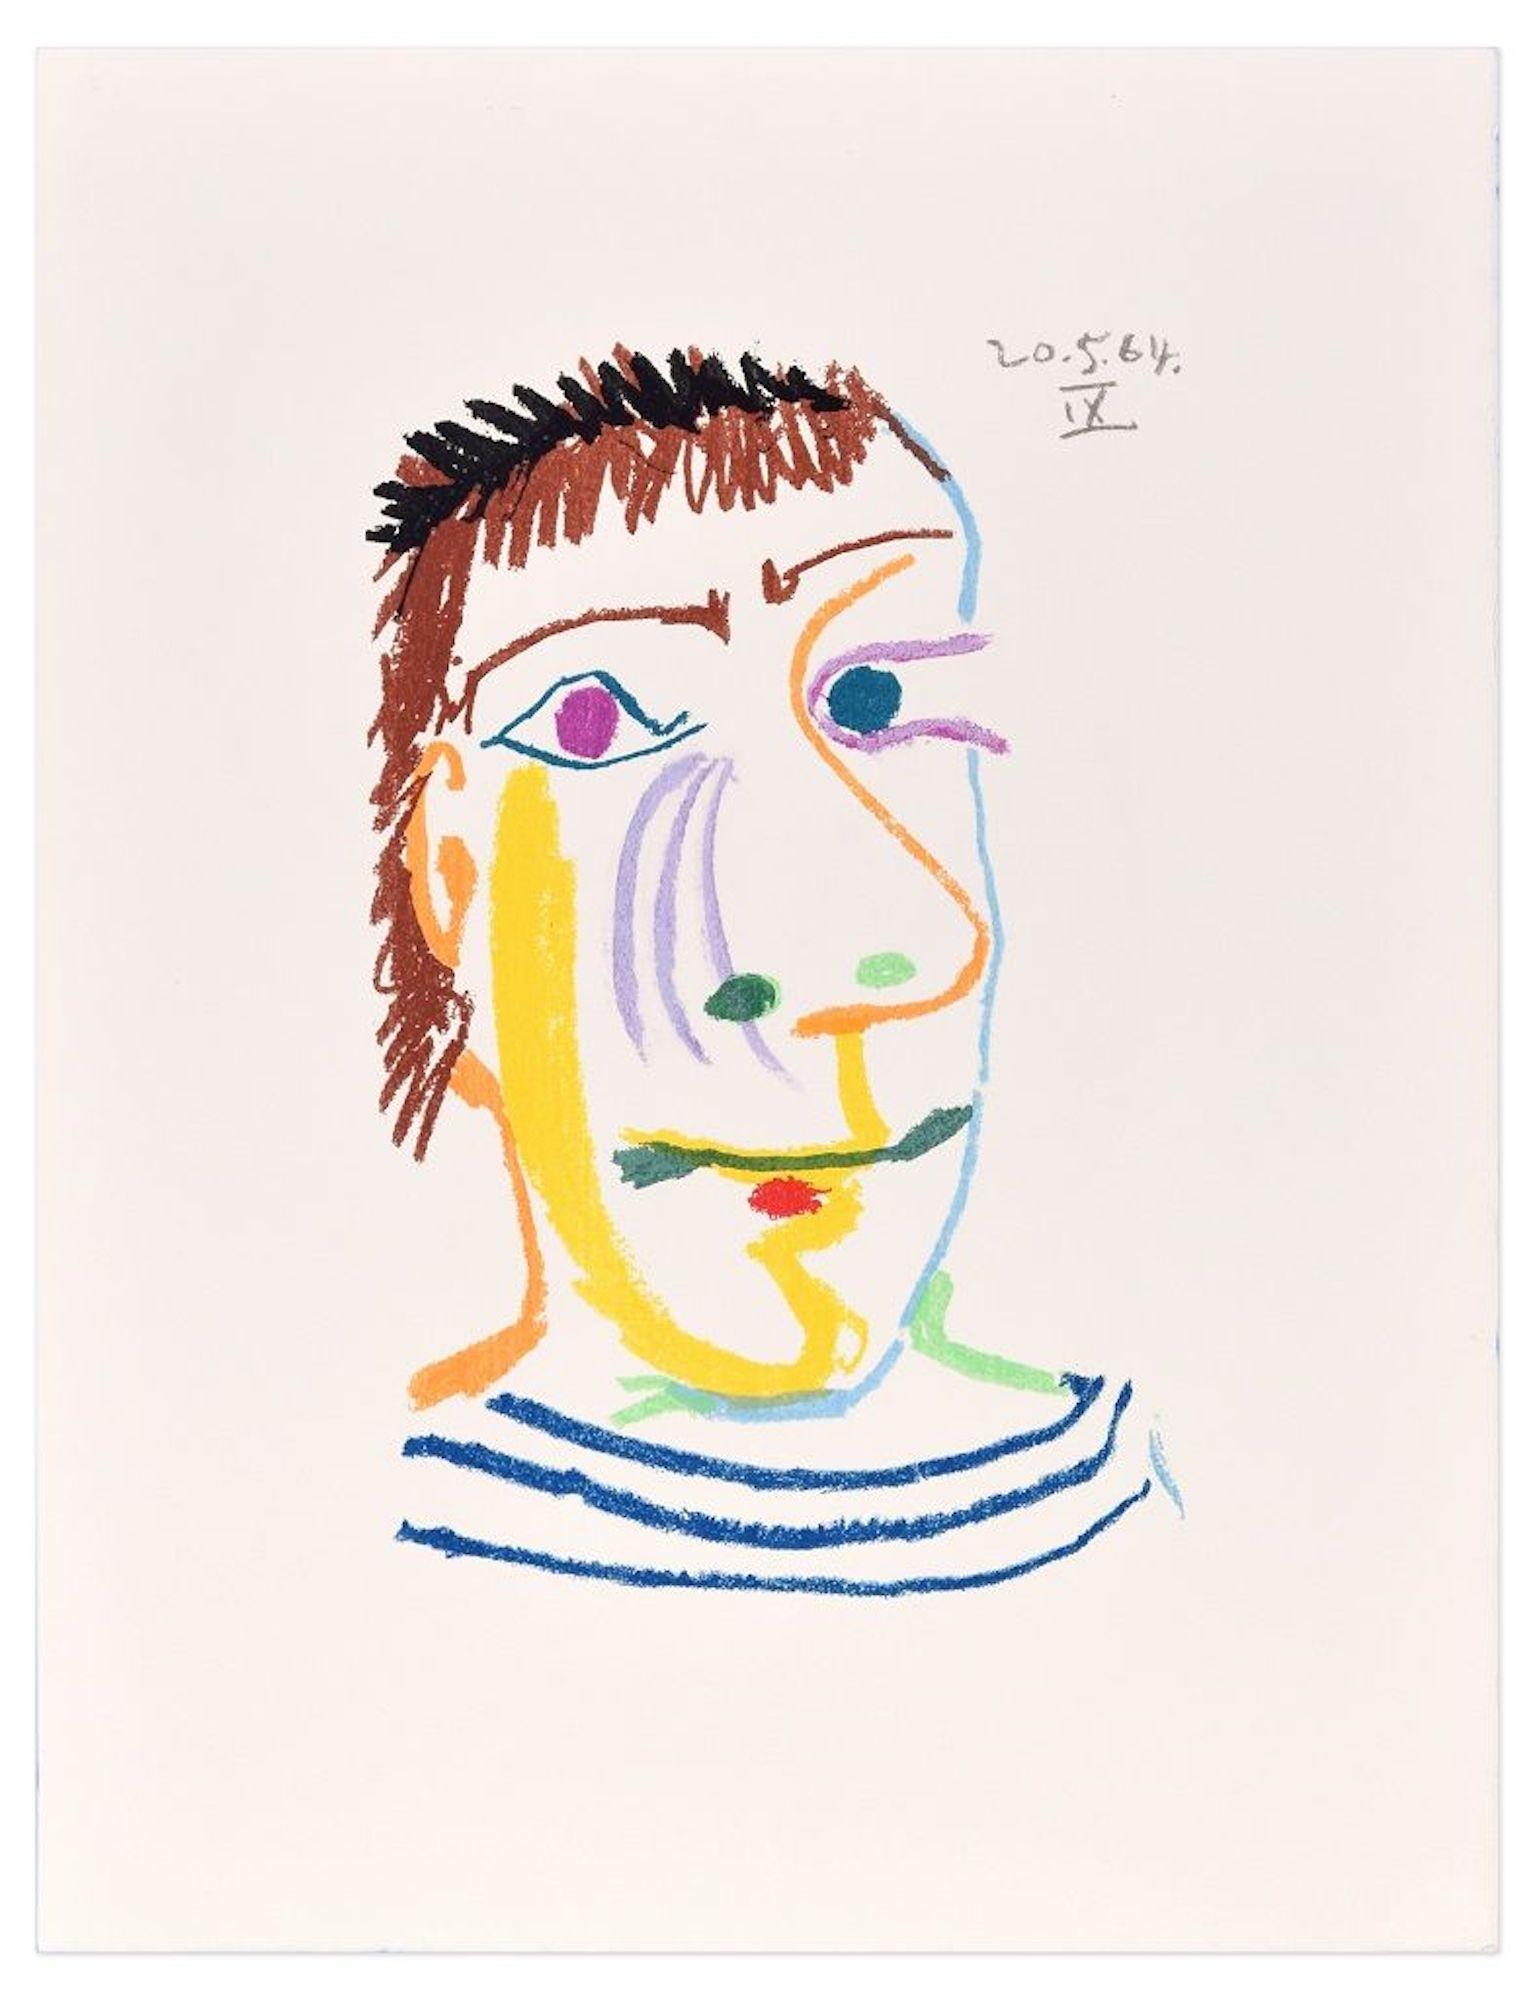 Le Goût du Bonheur - 20.5.64 IX - Lithograph After P. Picasso